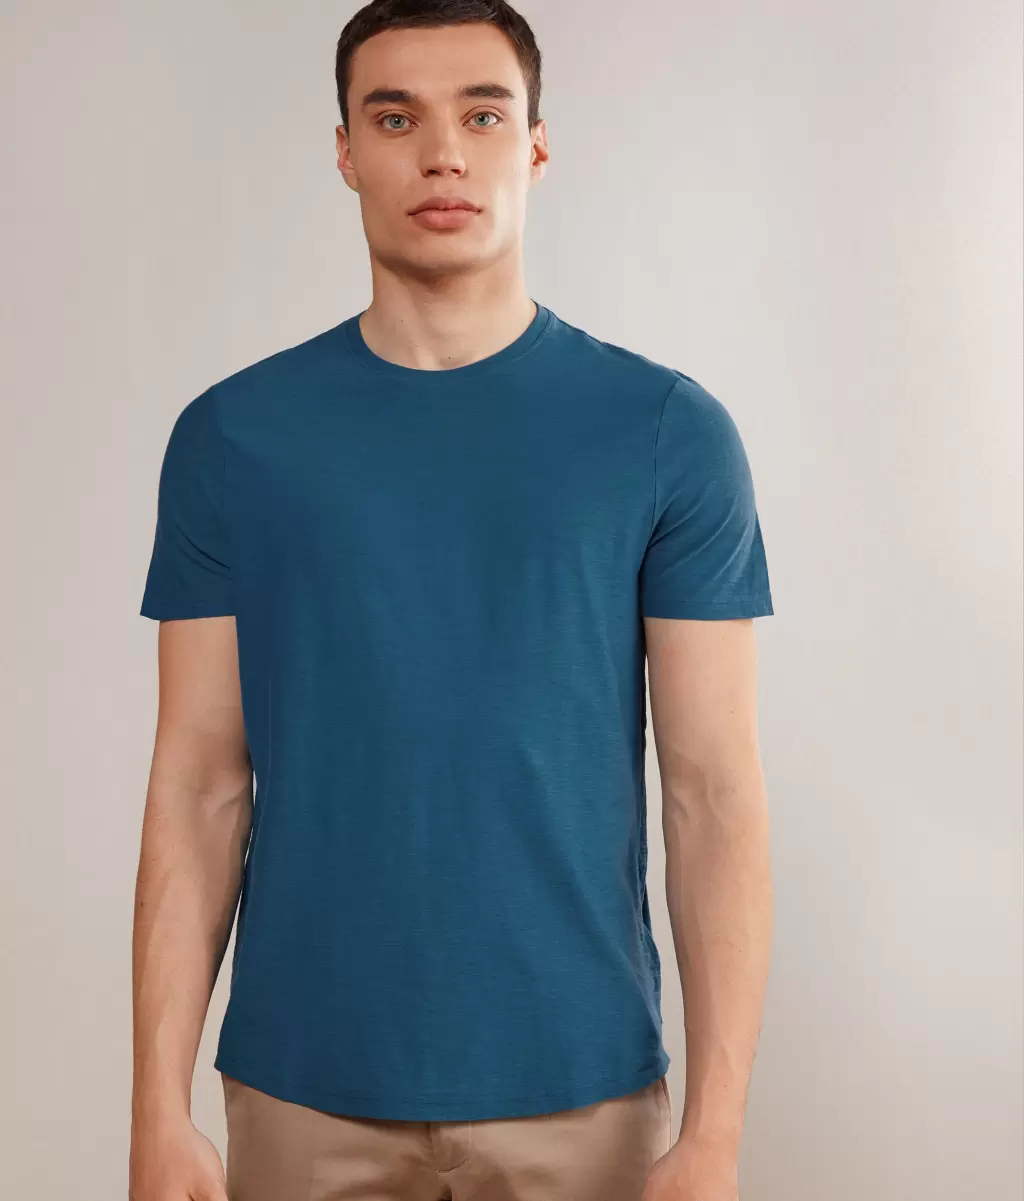 Falconeri Koszulka Z Bawełny Twist Blue T-Shirty I Koszulki Polo Mężczyzna - 1